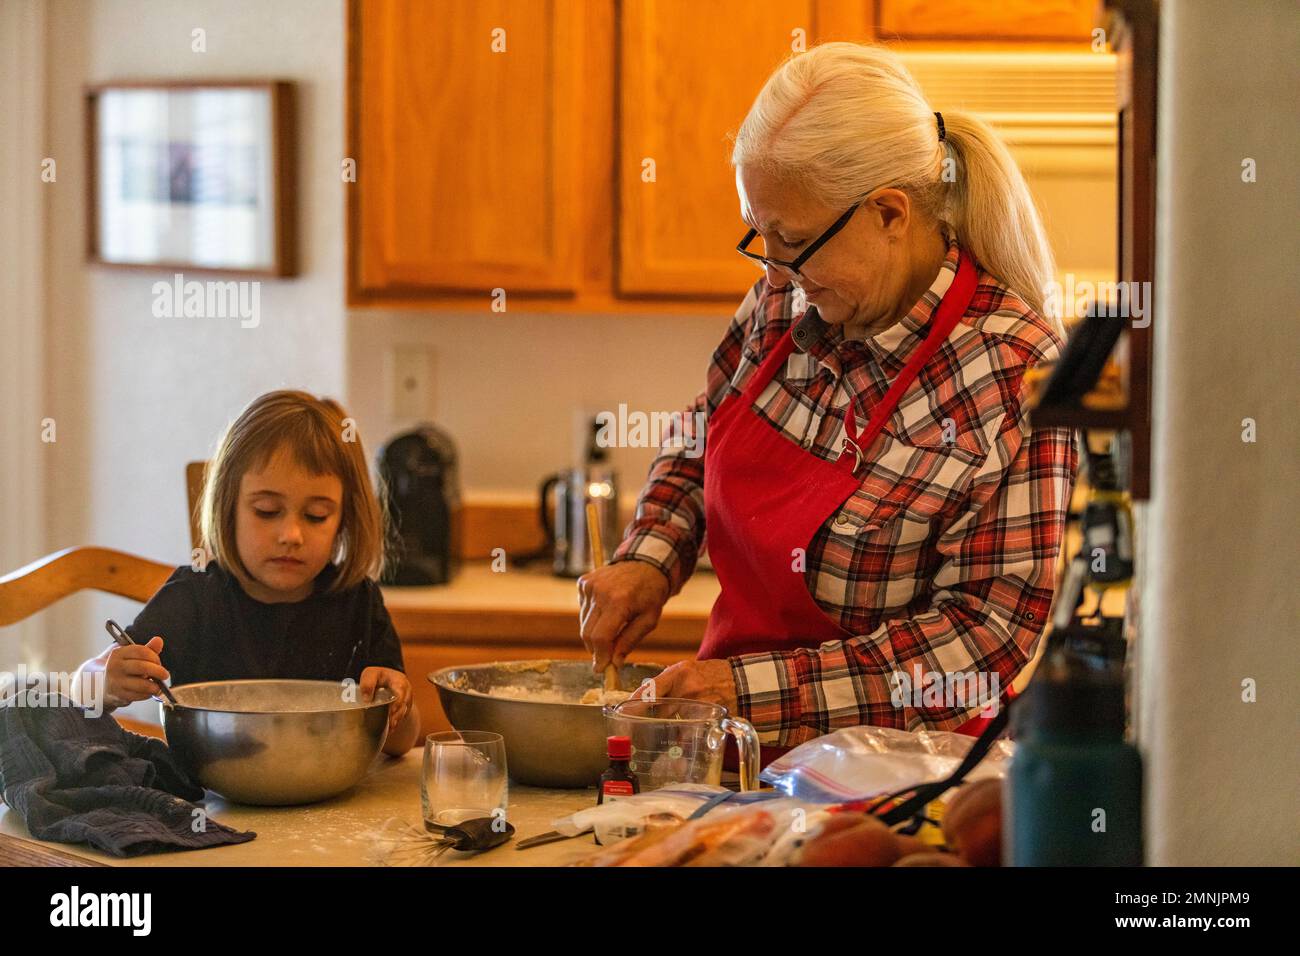 Grand-mère et petite-fille (6-7) cuisent des biscuits ensemble Banque D'Images